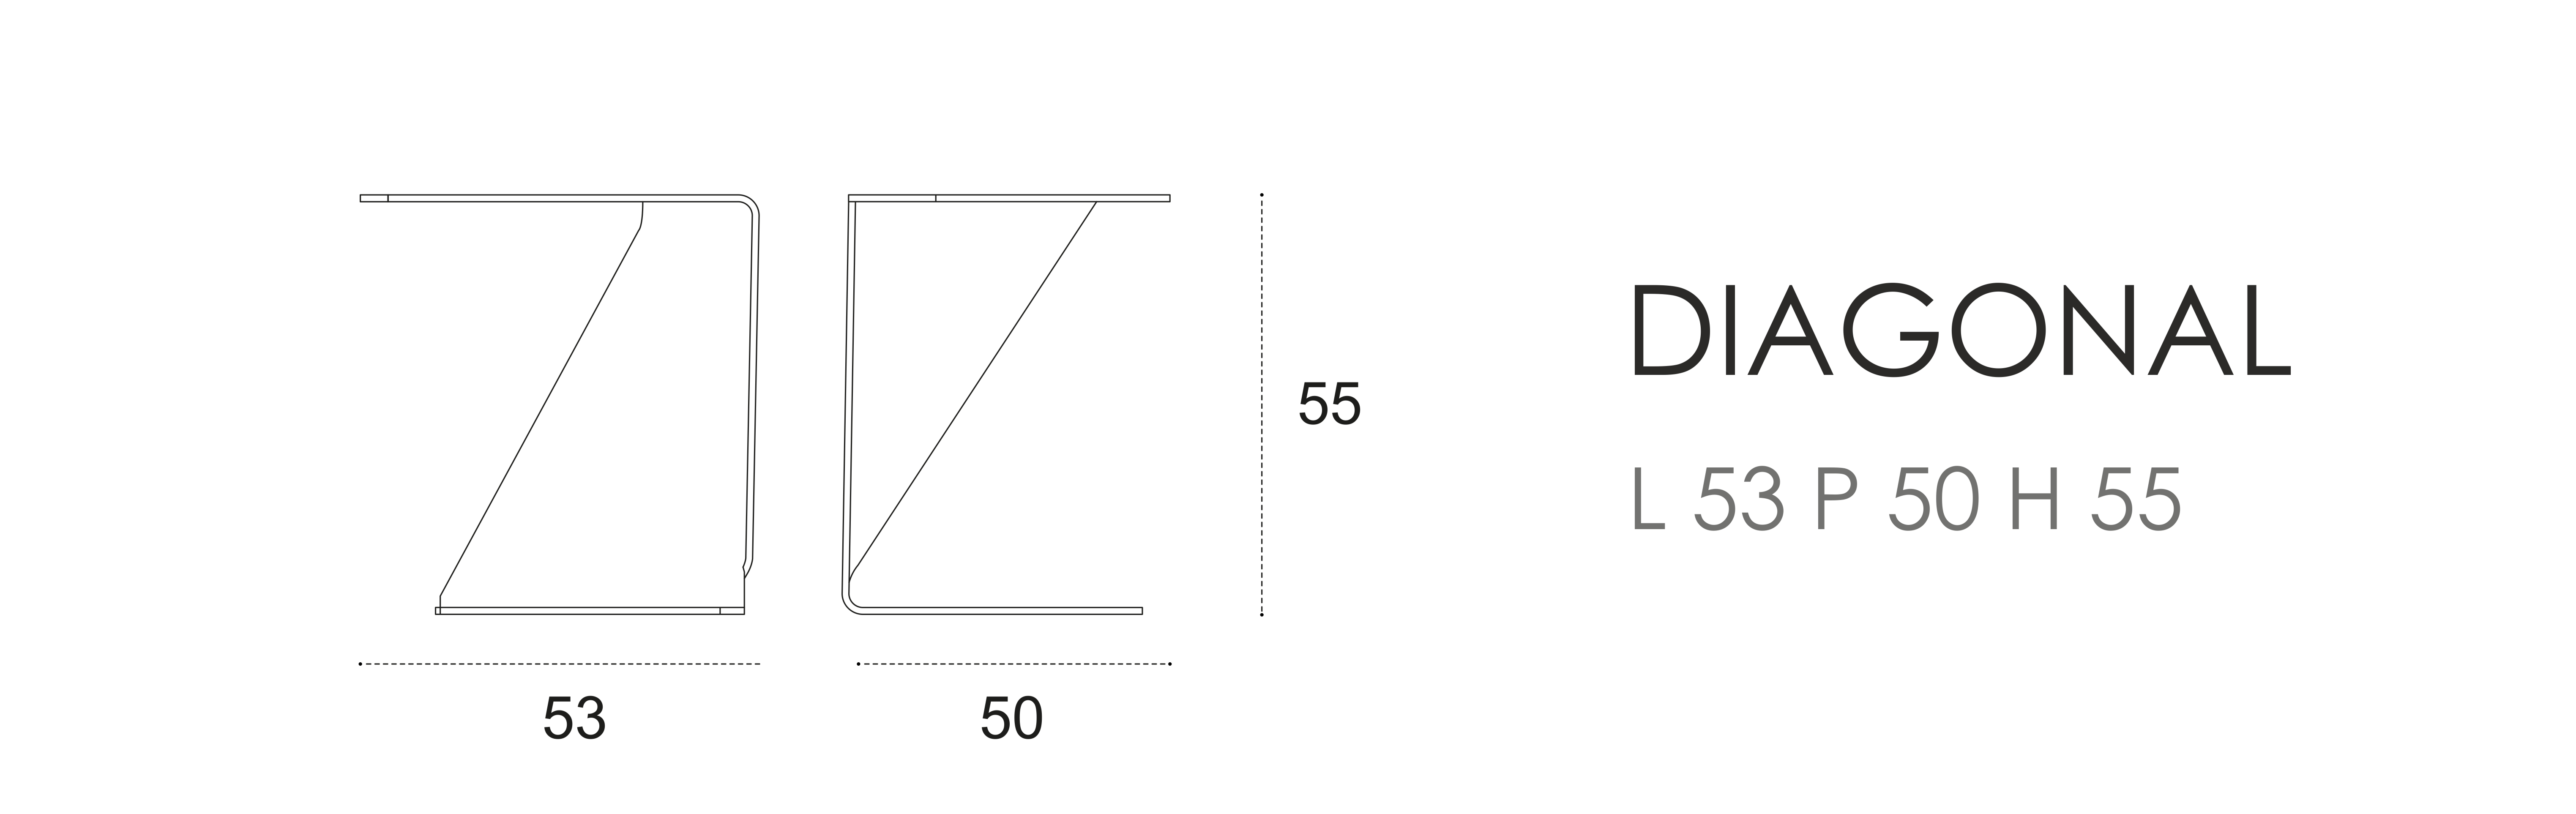 Diagonal L 53 P 50 H 55